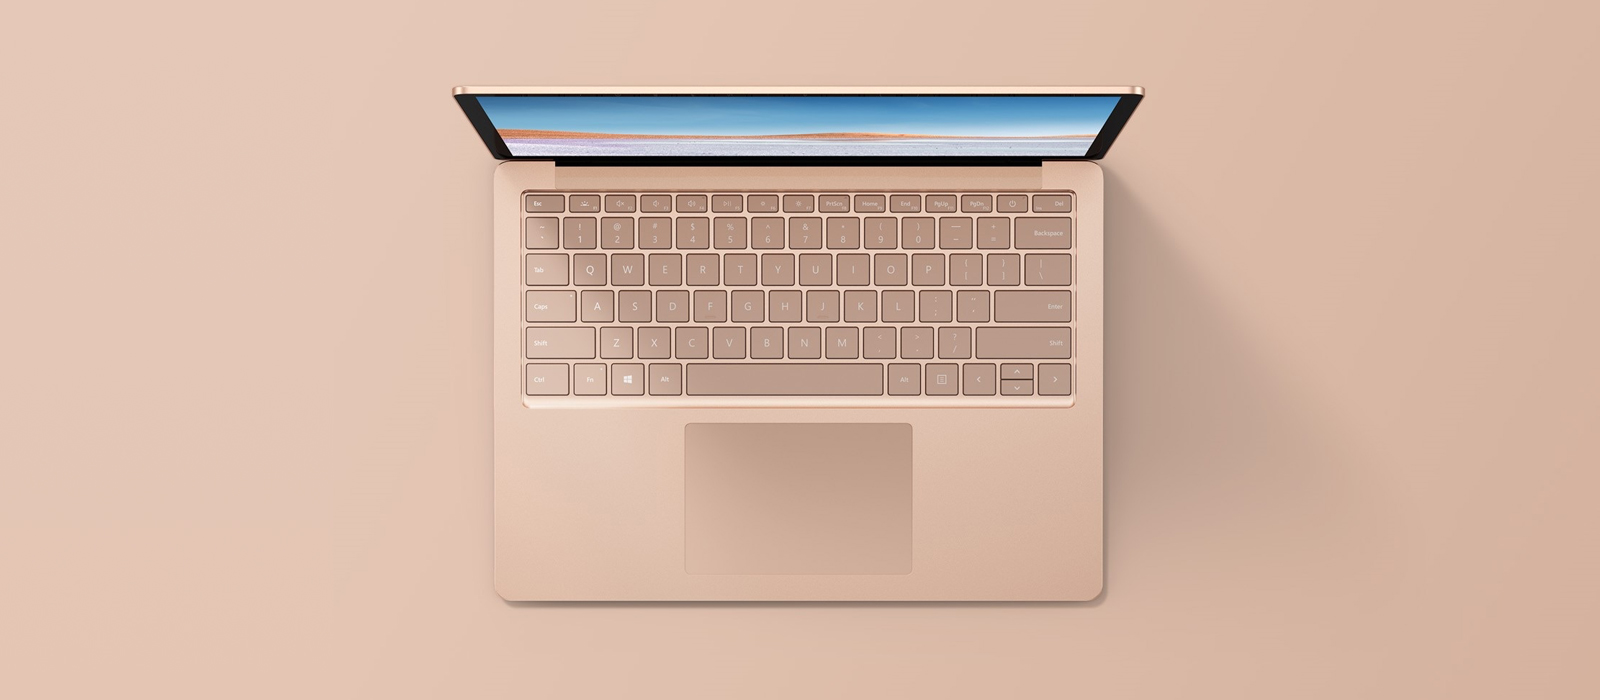 En sandstenfarvet Surface Laptop fra fugleperspektiv